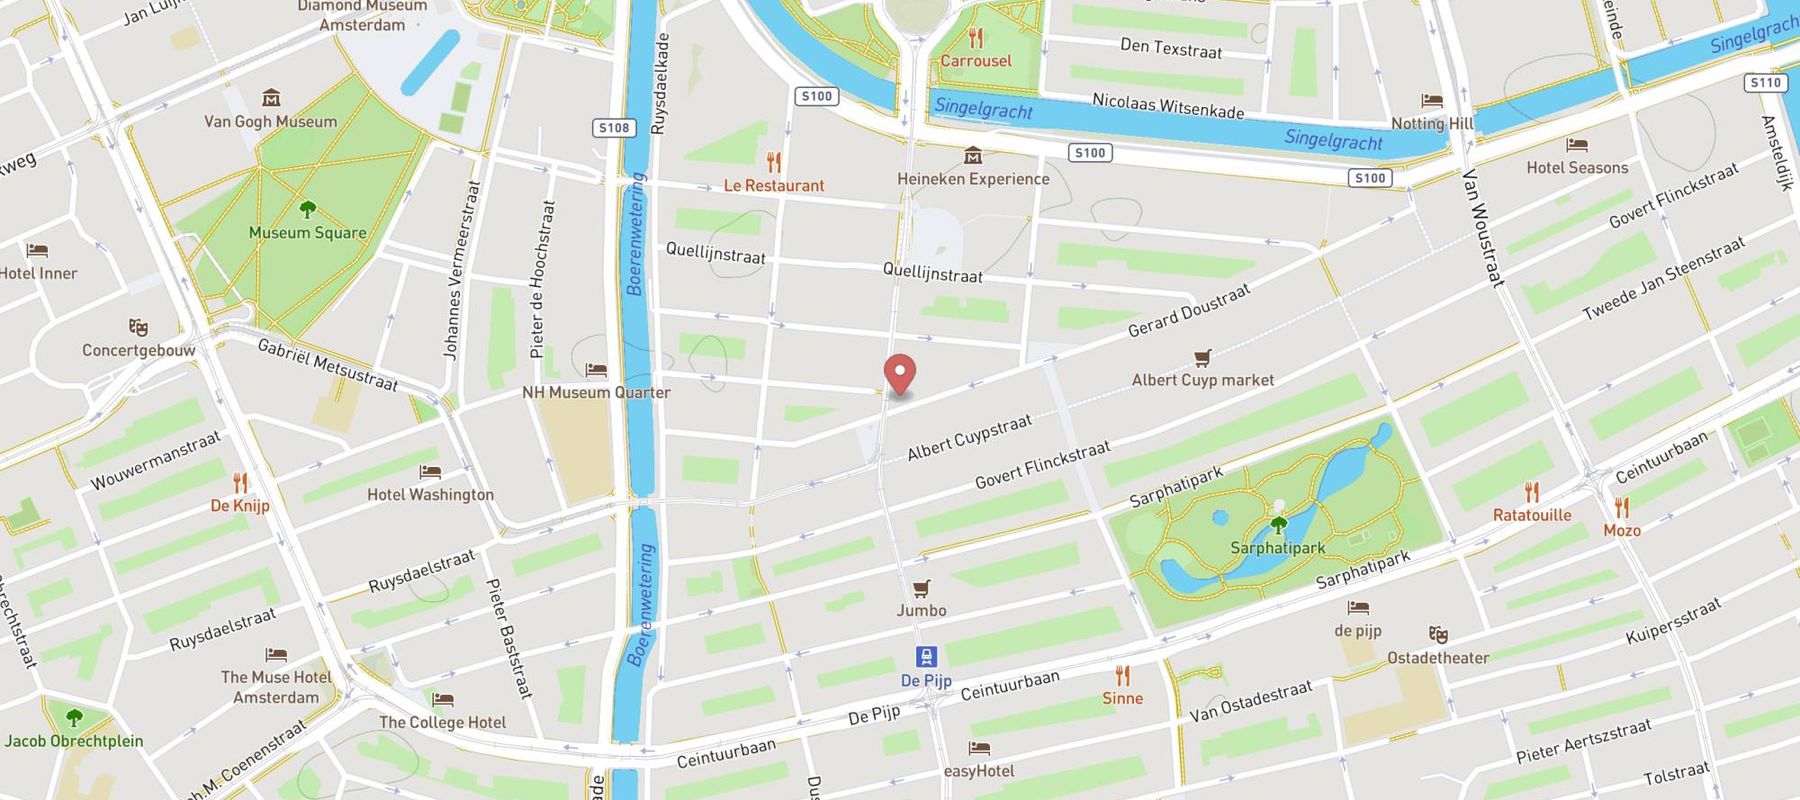 Hans Anders Opticien Amsterdam De Pijp map